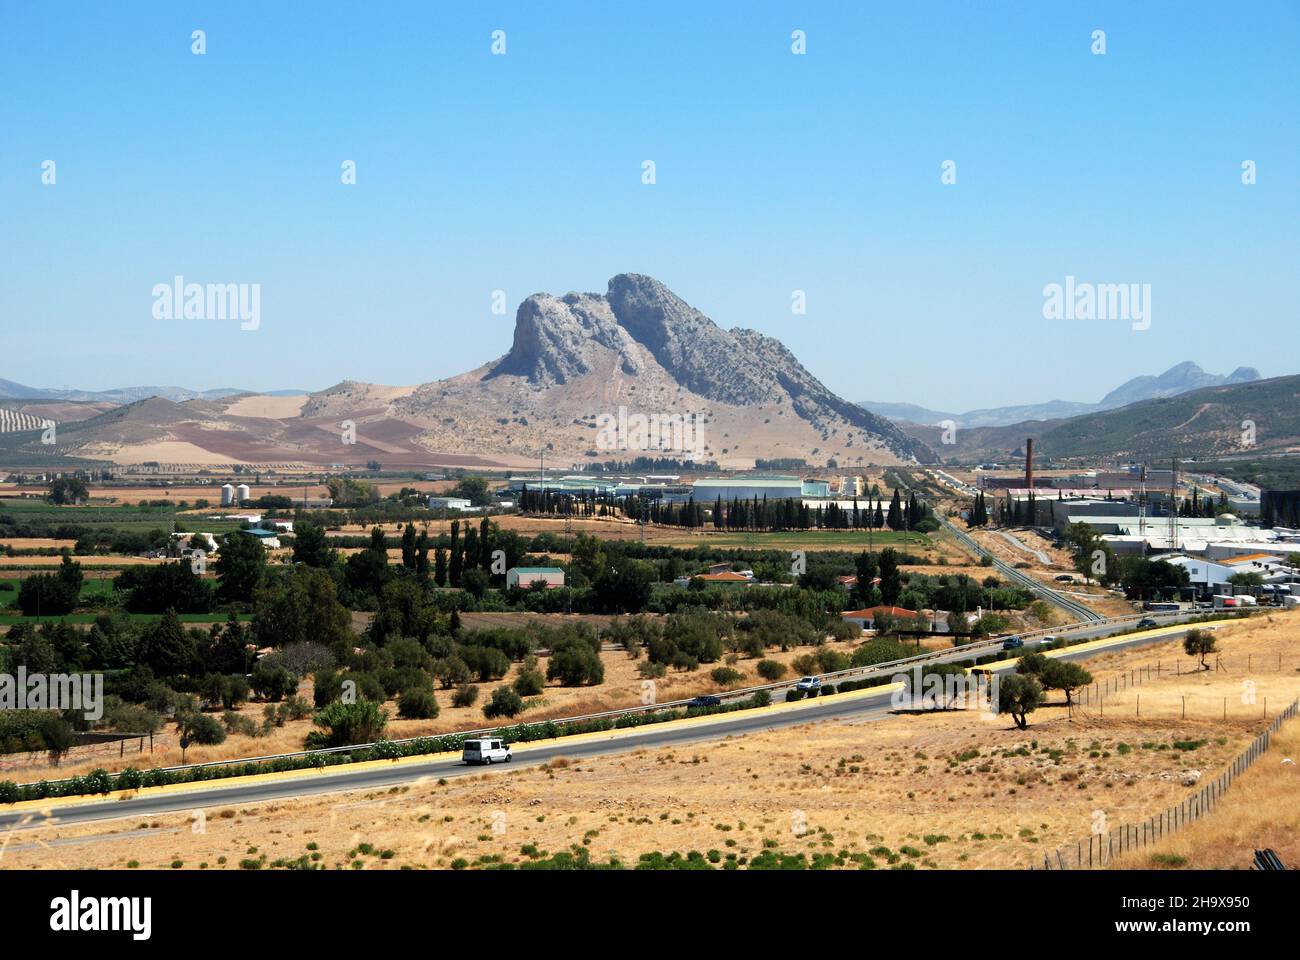 Vista de la Roca de los Amores (La Peña de los Enamoradas) y de los alrededores, Antequera, España. Foto de stock